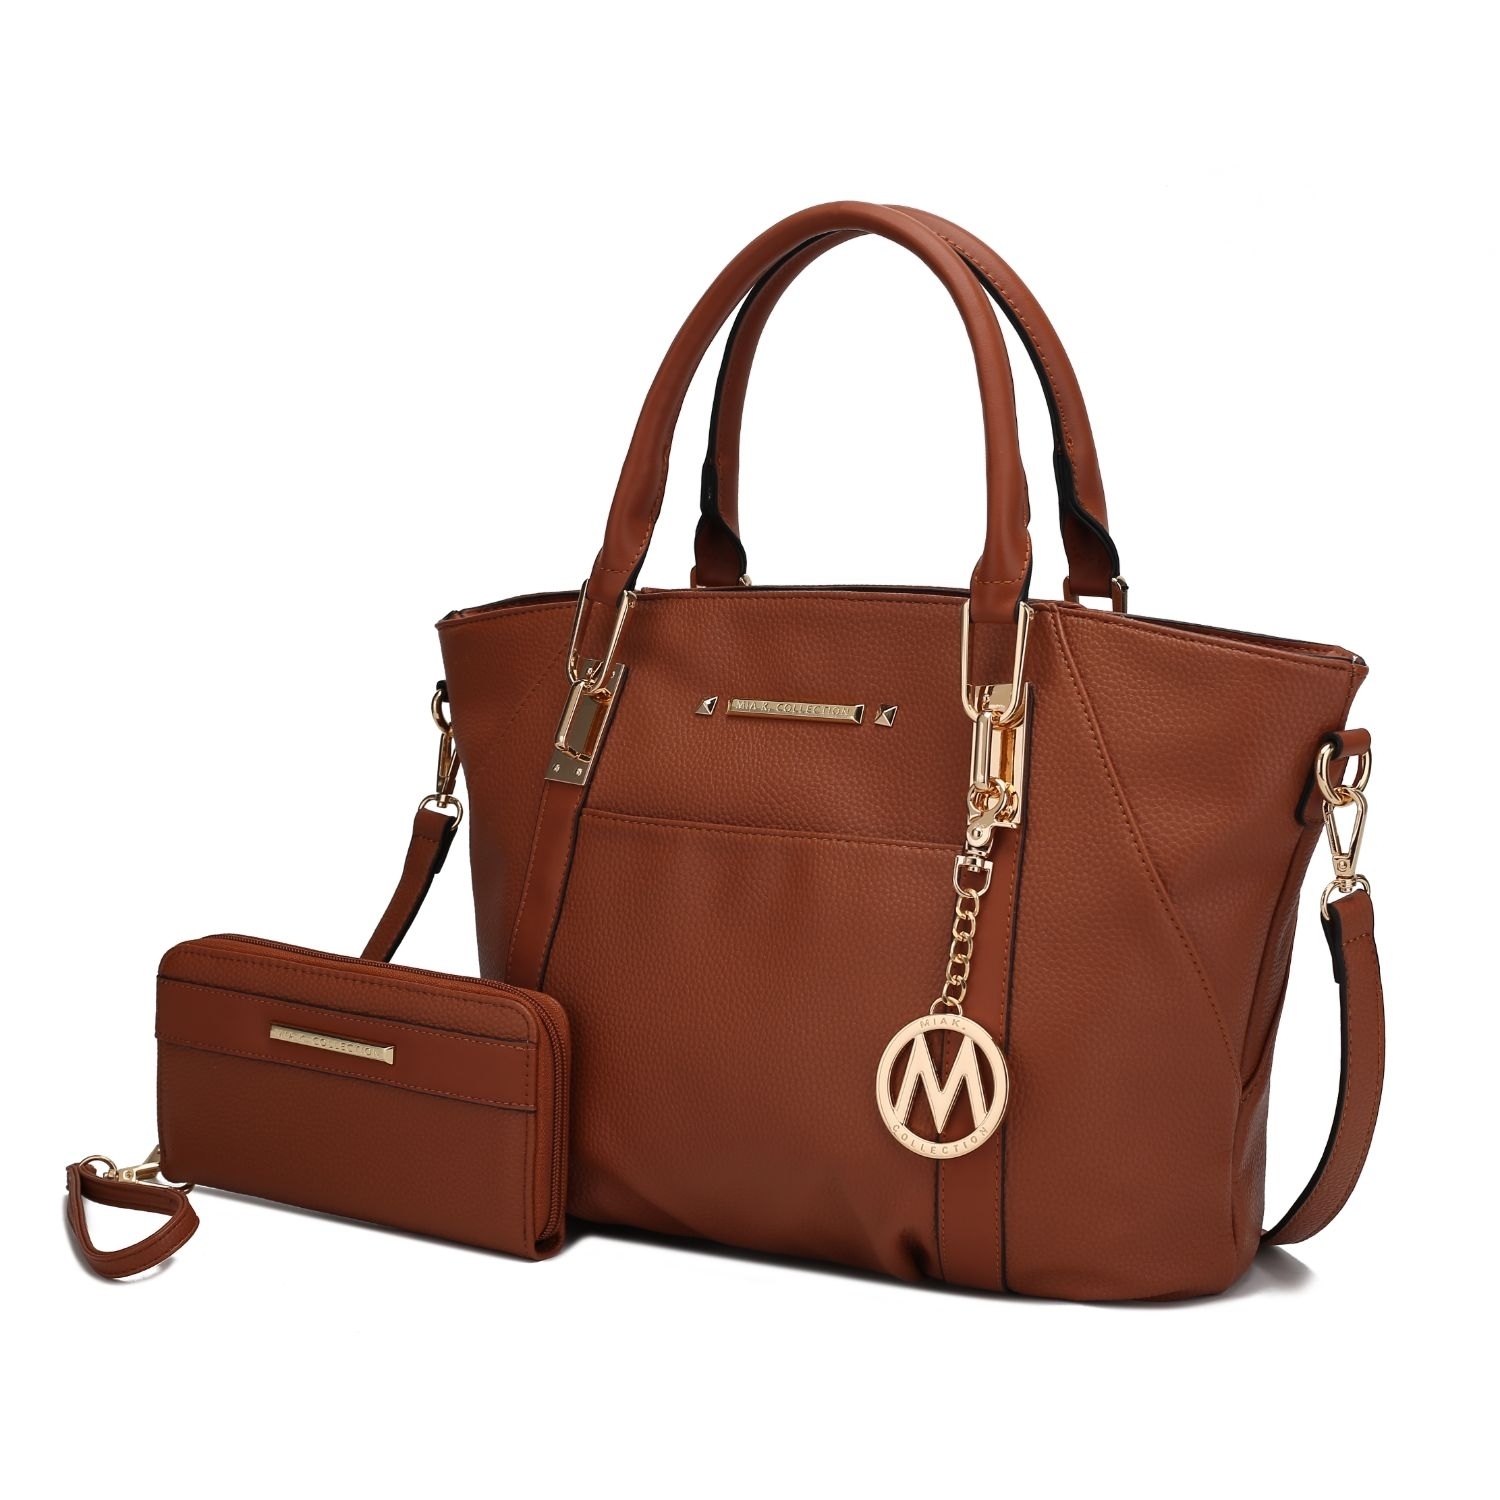 MKF Collection Darielle Satchel Handbag With Wallet By Mia K. - Seafoam